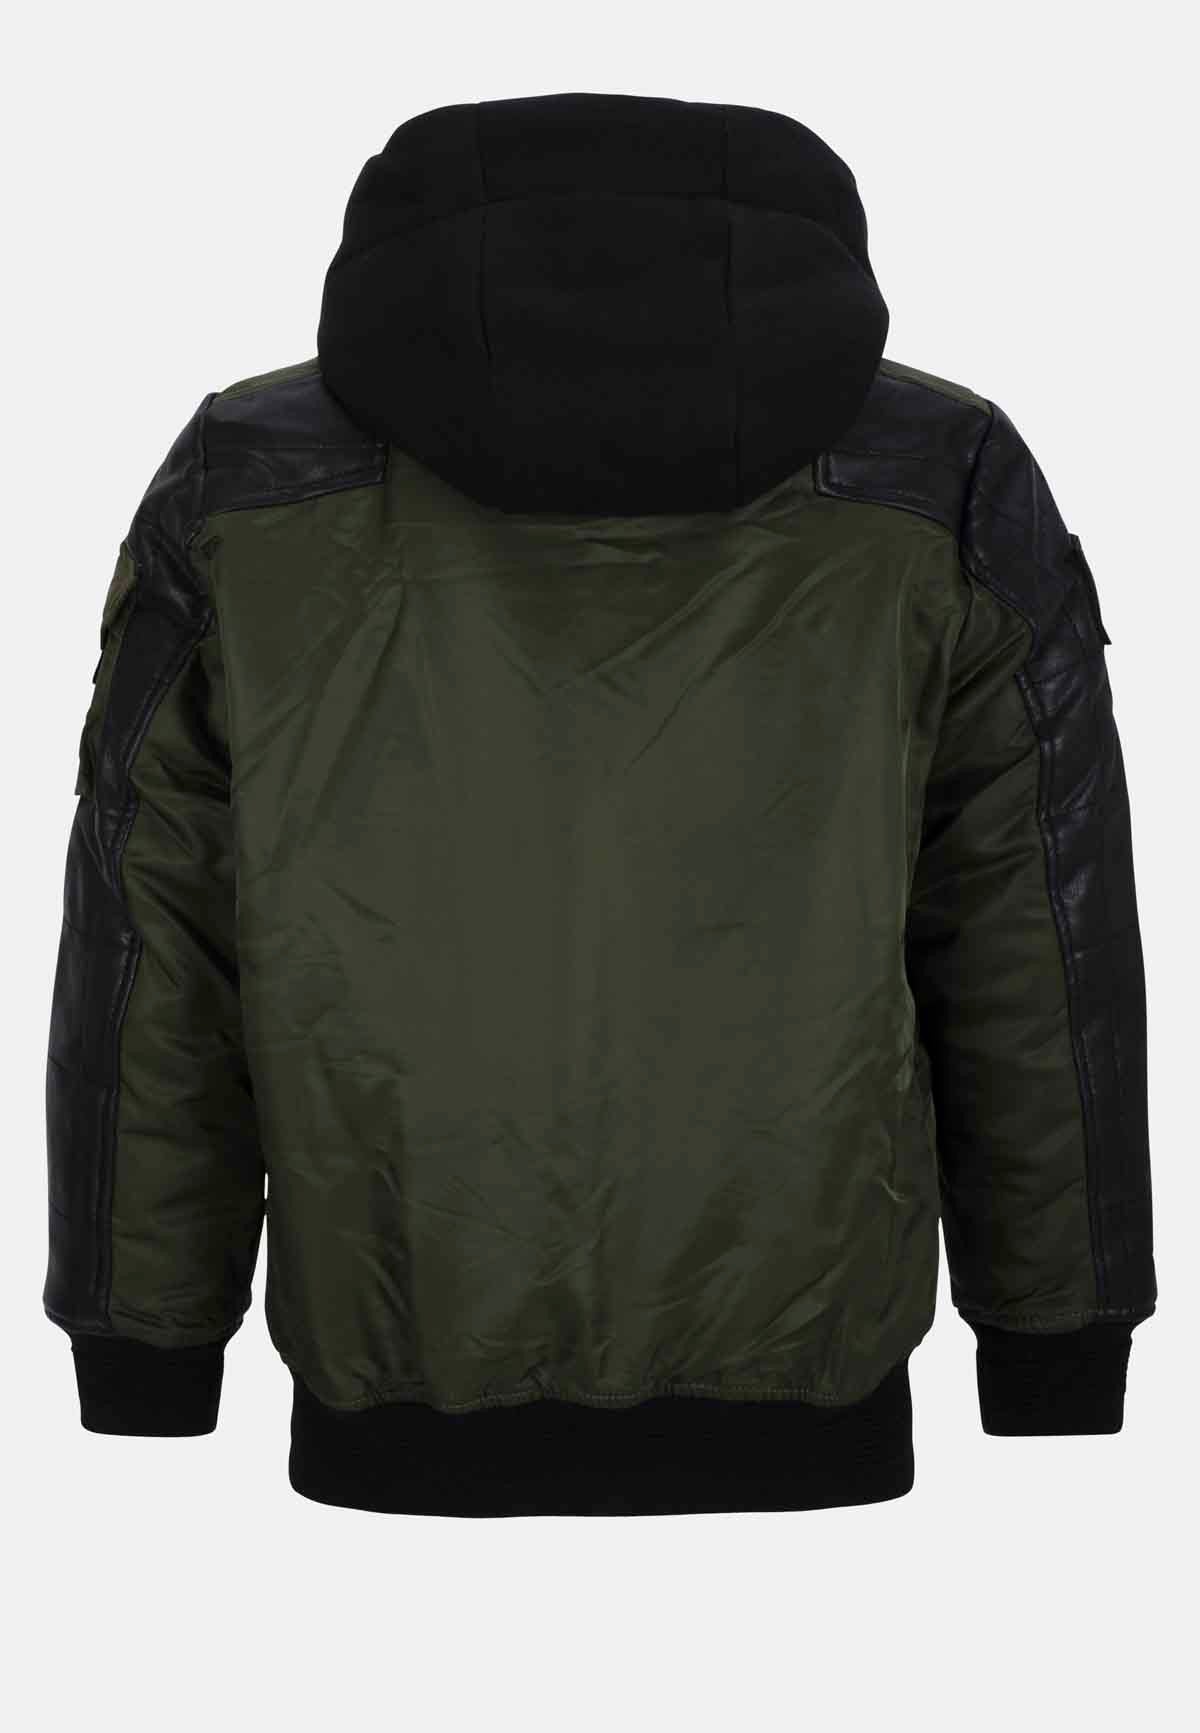 CMK101 boys jacket